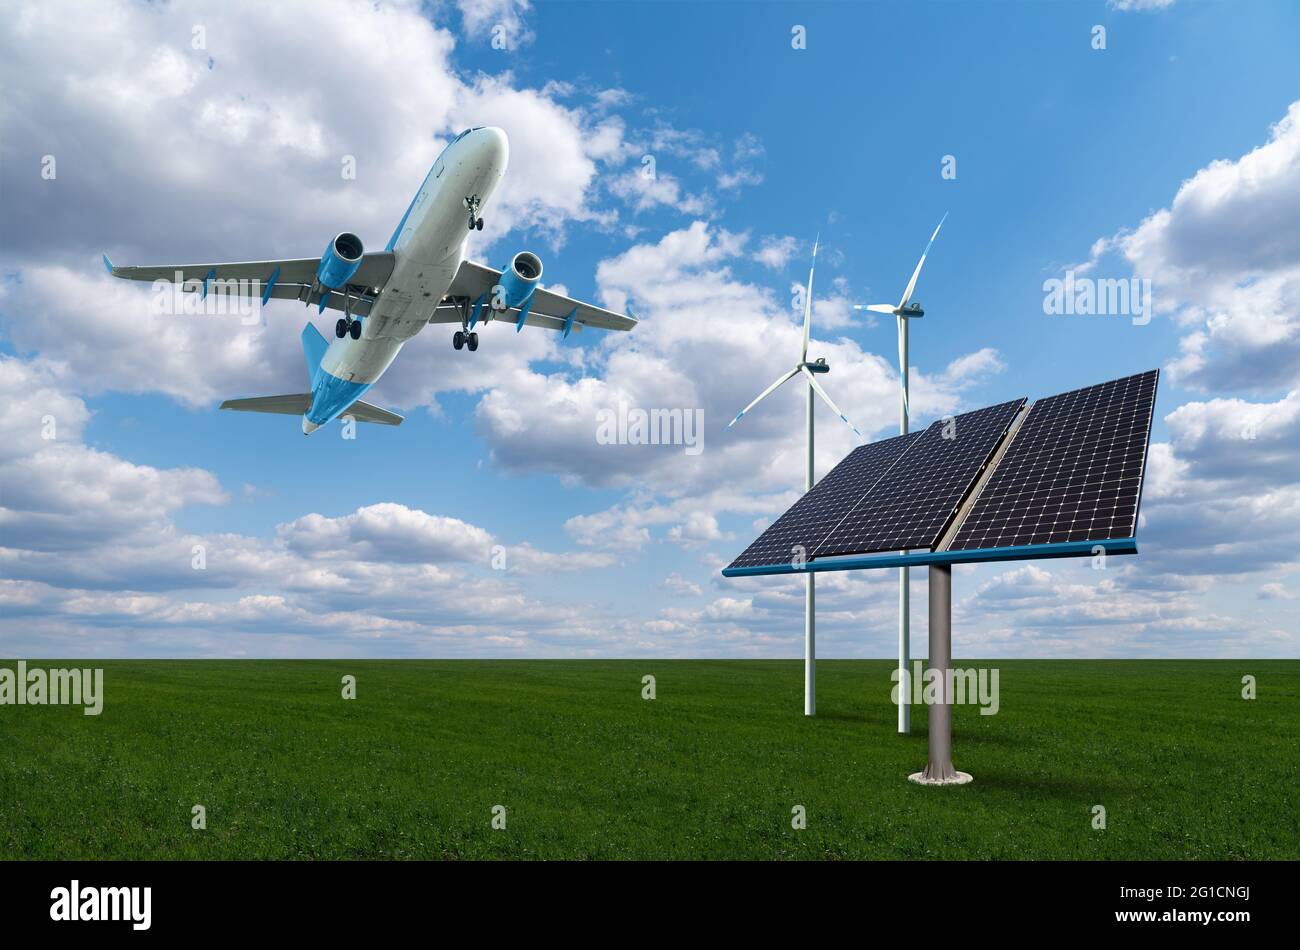 Avion d'atterrissage avec panneaux solaires et éoliennes. Concept de mobilité propre Banque D'Images